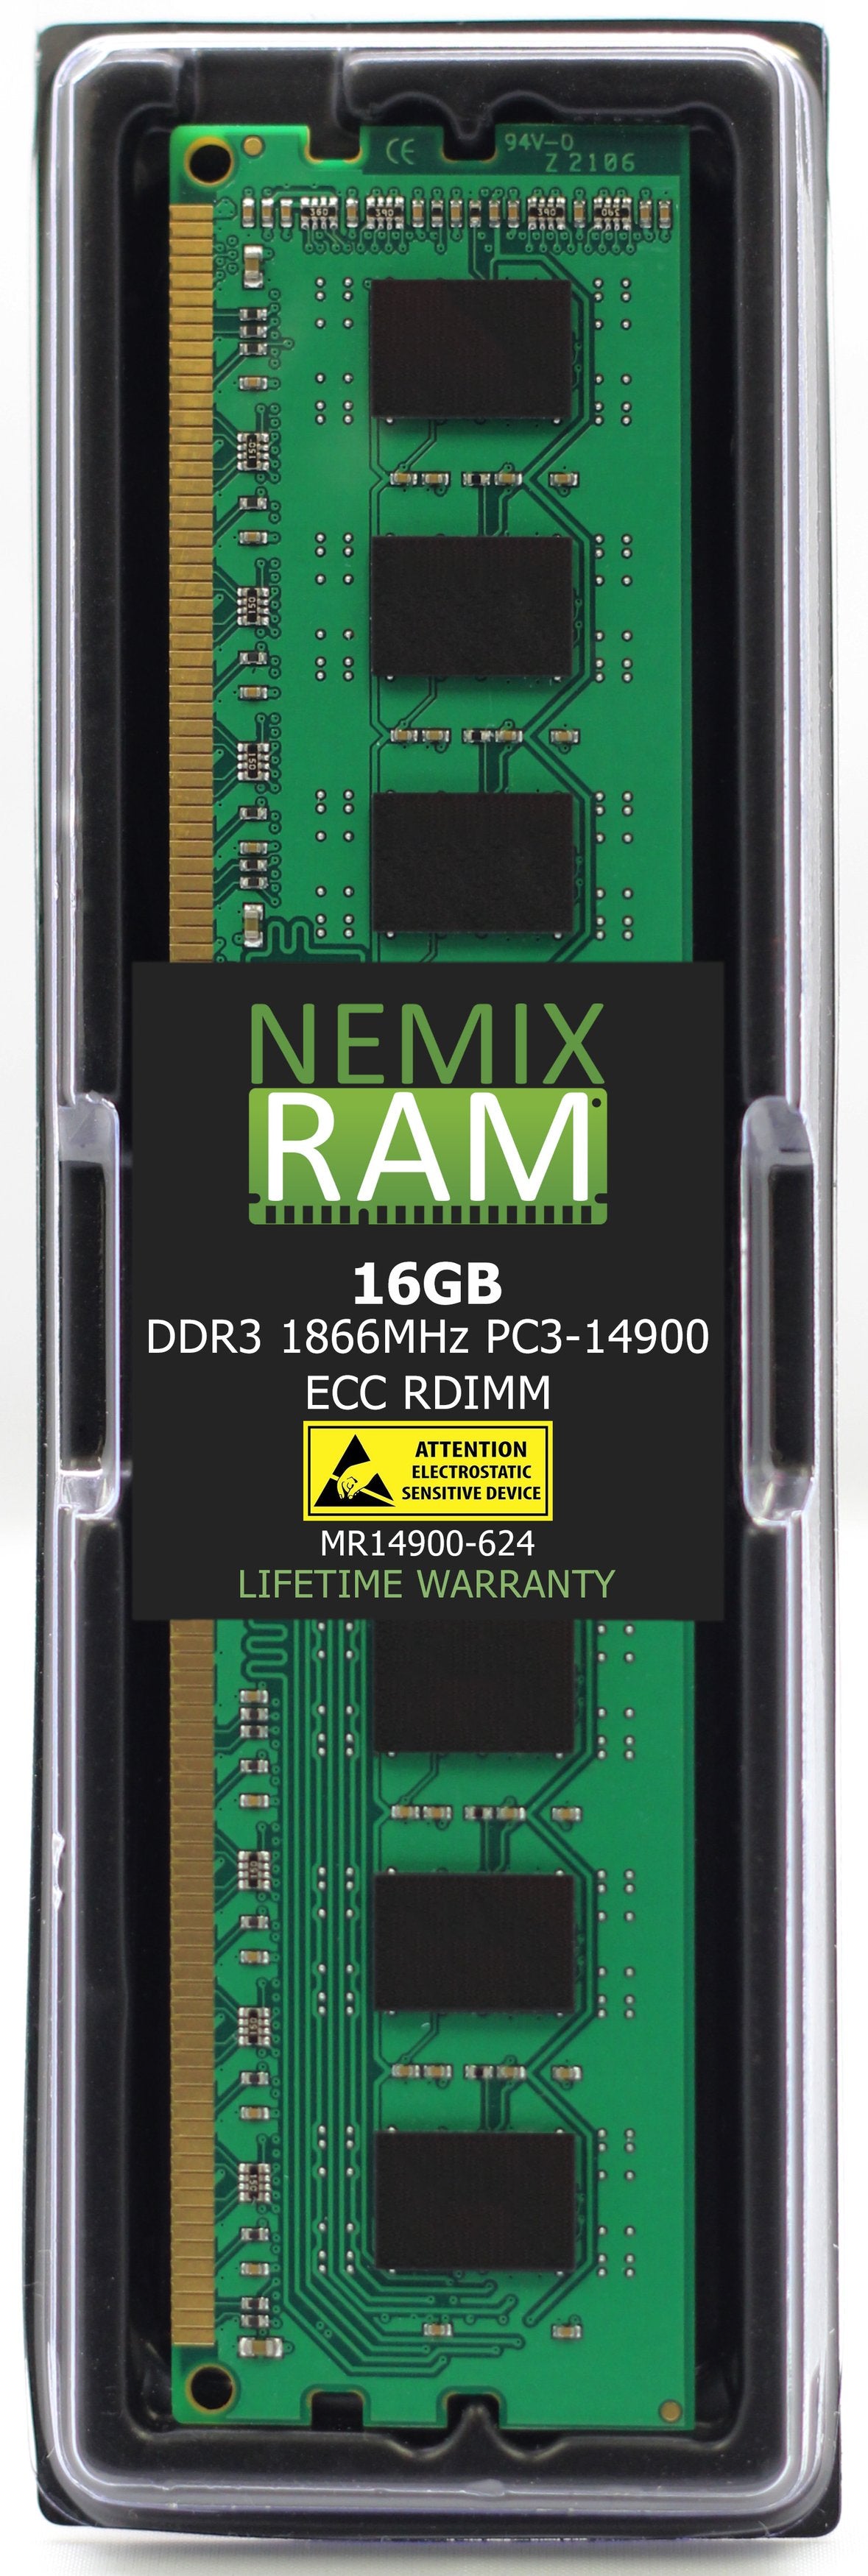 16GB DDR3 1866MHZ PC3-14900 RDIMM Compatible with SUPERMICRO MEM-DR316L-CL01-ER18